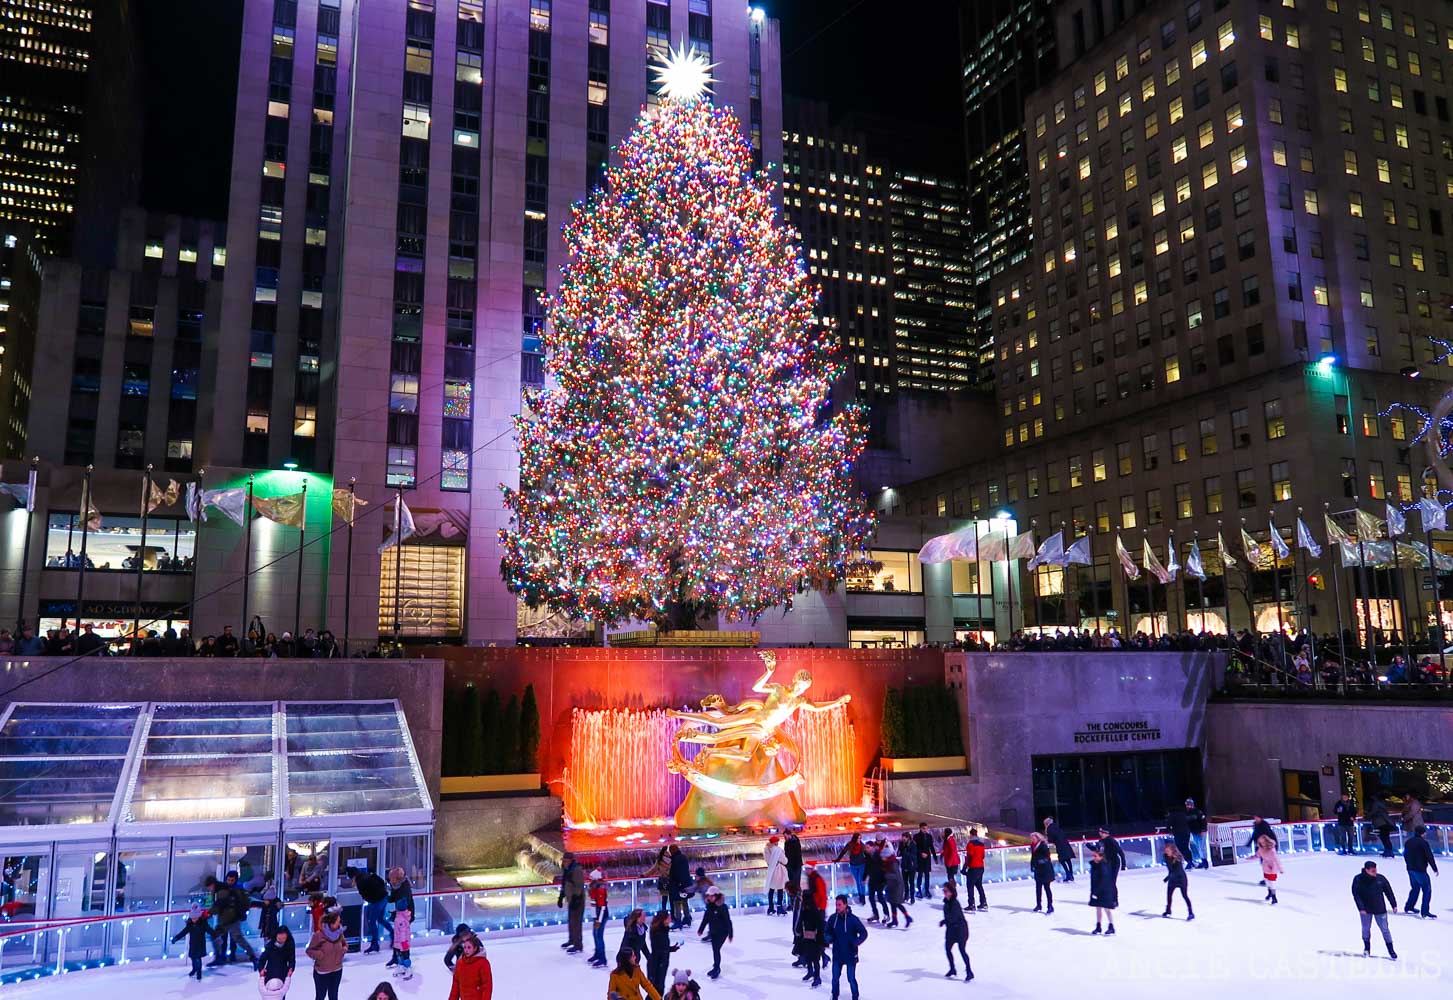 Les arbres de Noël les plus célèbres de New York - Rockefeller Center